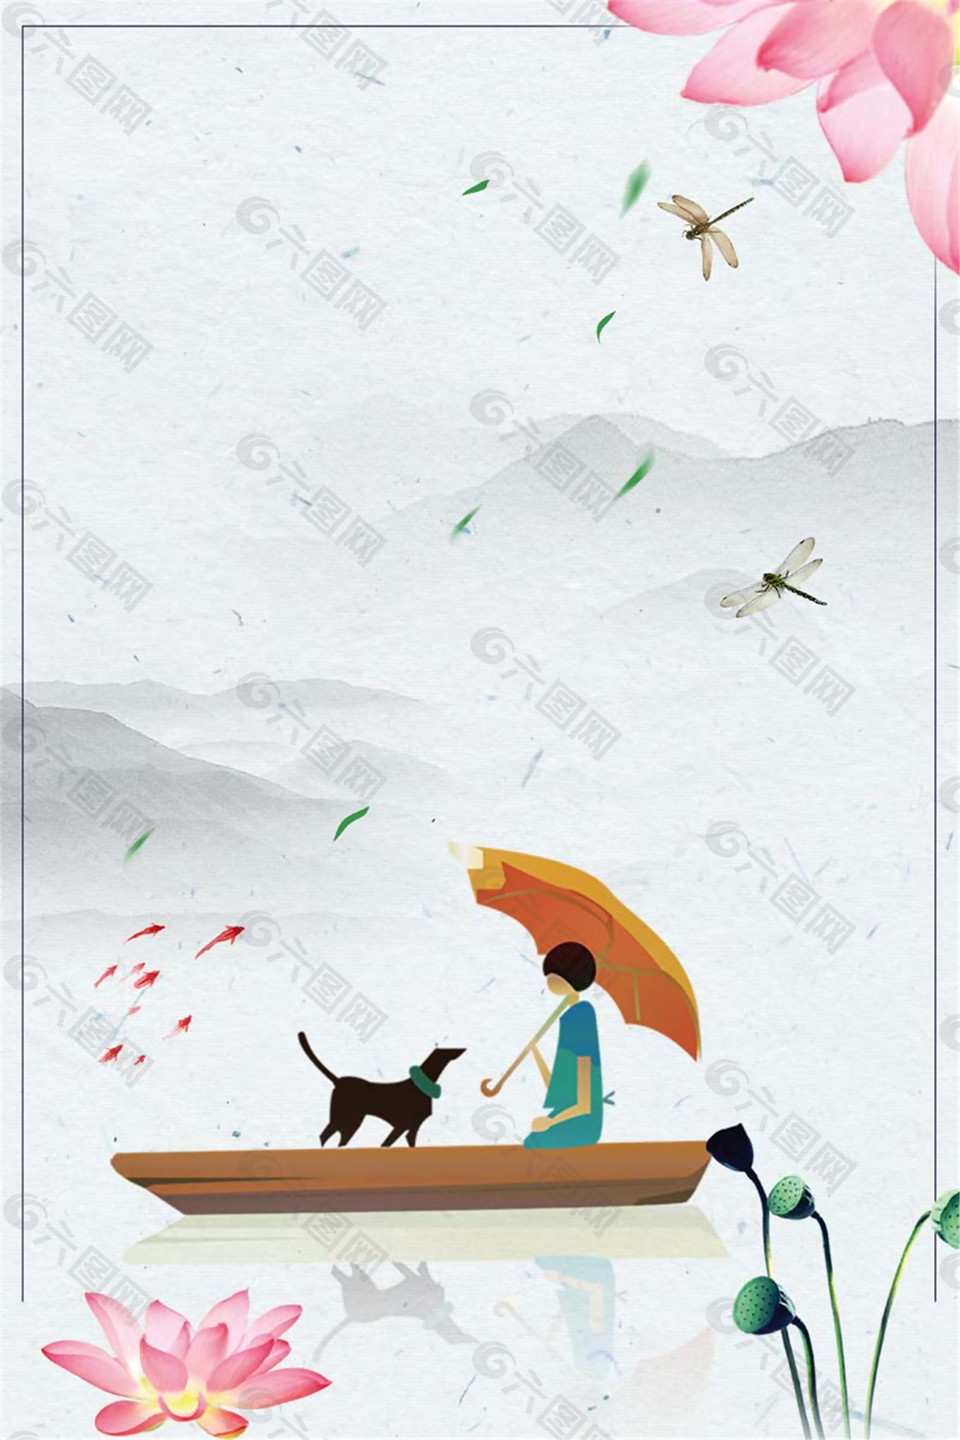 唯美夏至节气小船上的女孩与狗海报背景设计